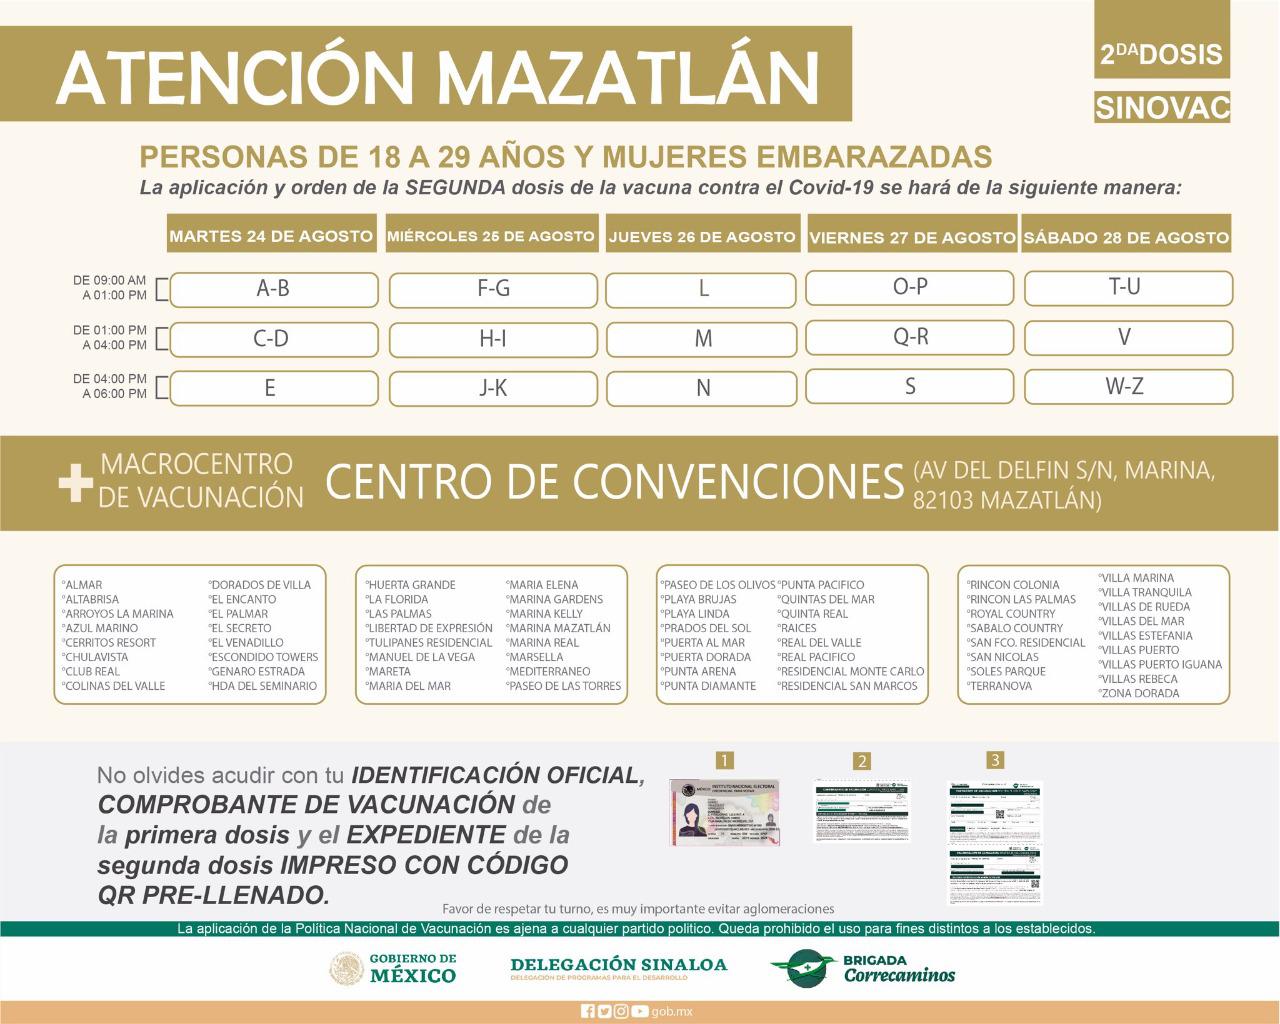 $!De martes a sábado se aplicará en Mazatlán la segunda dosis de Sinovac a los de 18 a 29 años y embarazadas; rezagados quedan fuera